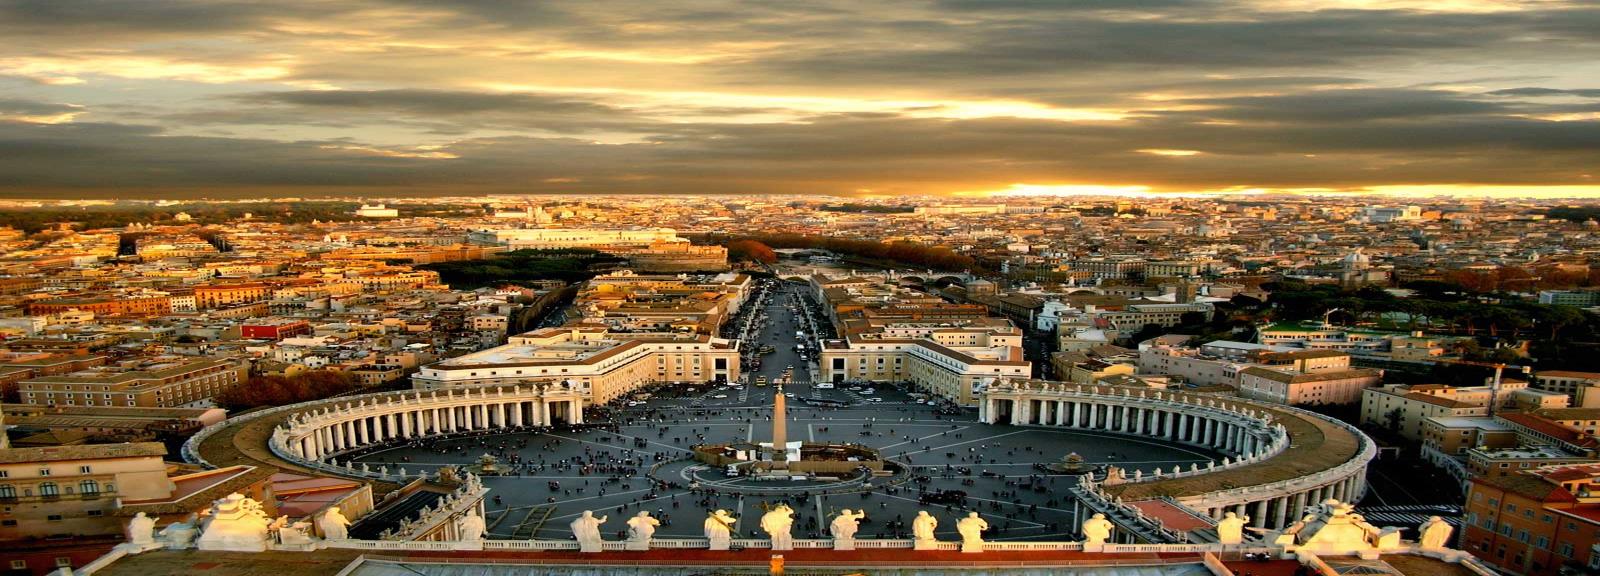 Roma A capital de Itália, fundada em 753 a.c., é uma das cidades mais antigas do velho continente.